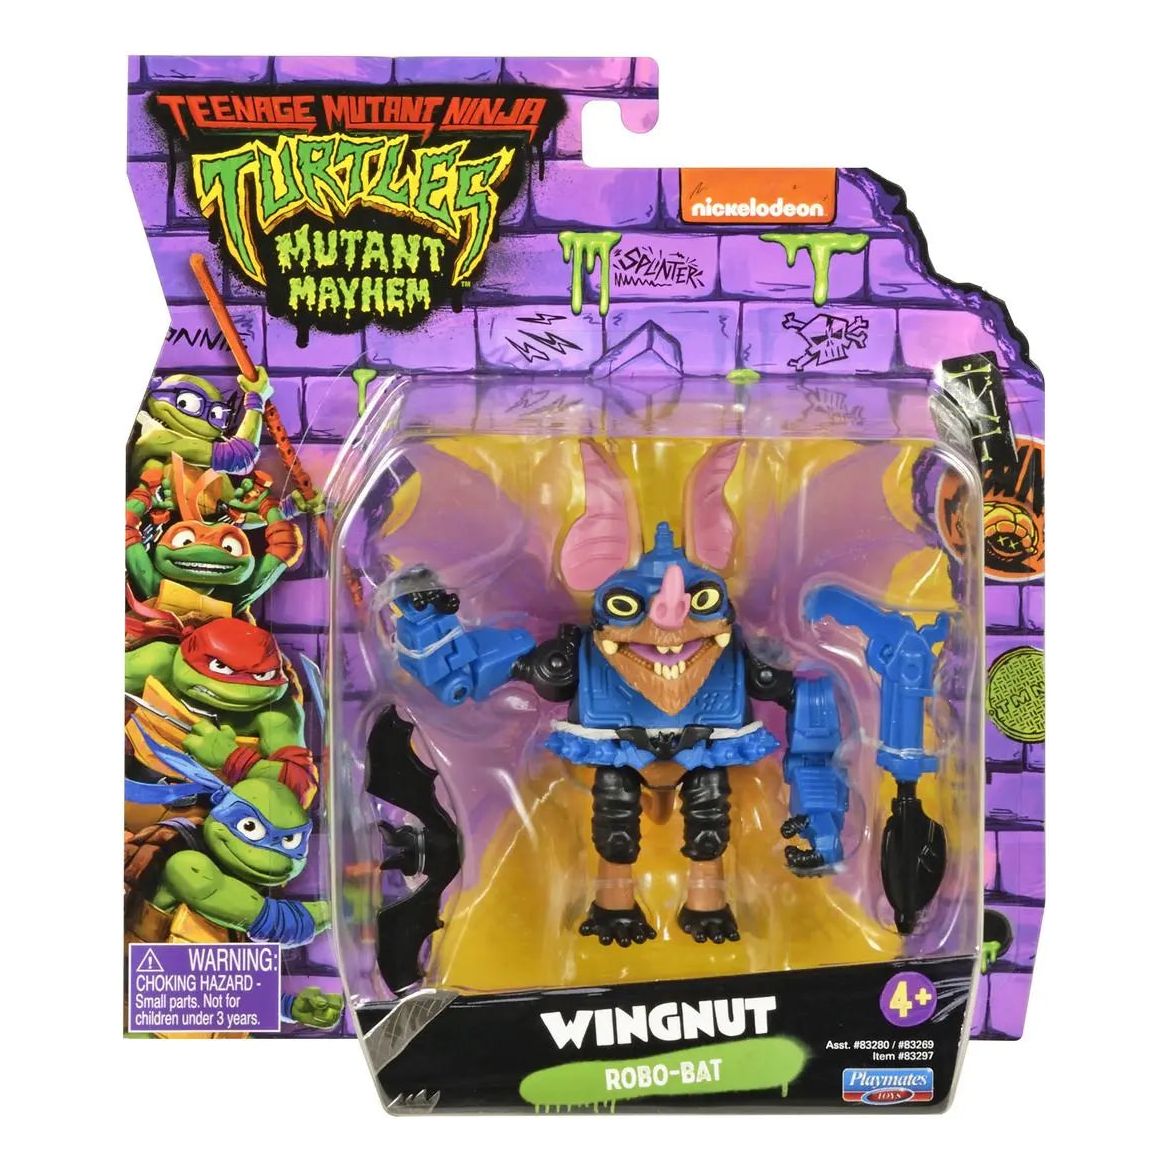 TMNT Mutant Mayhem Wingnut Action Figure Teenage Mutant Ninja Turtles